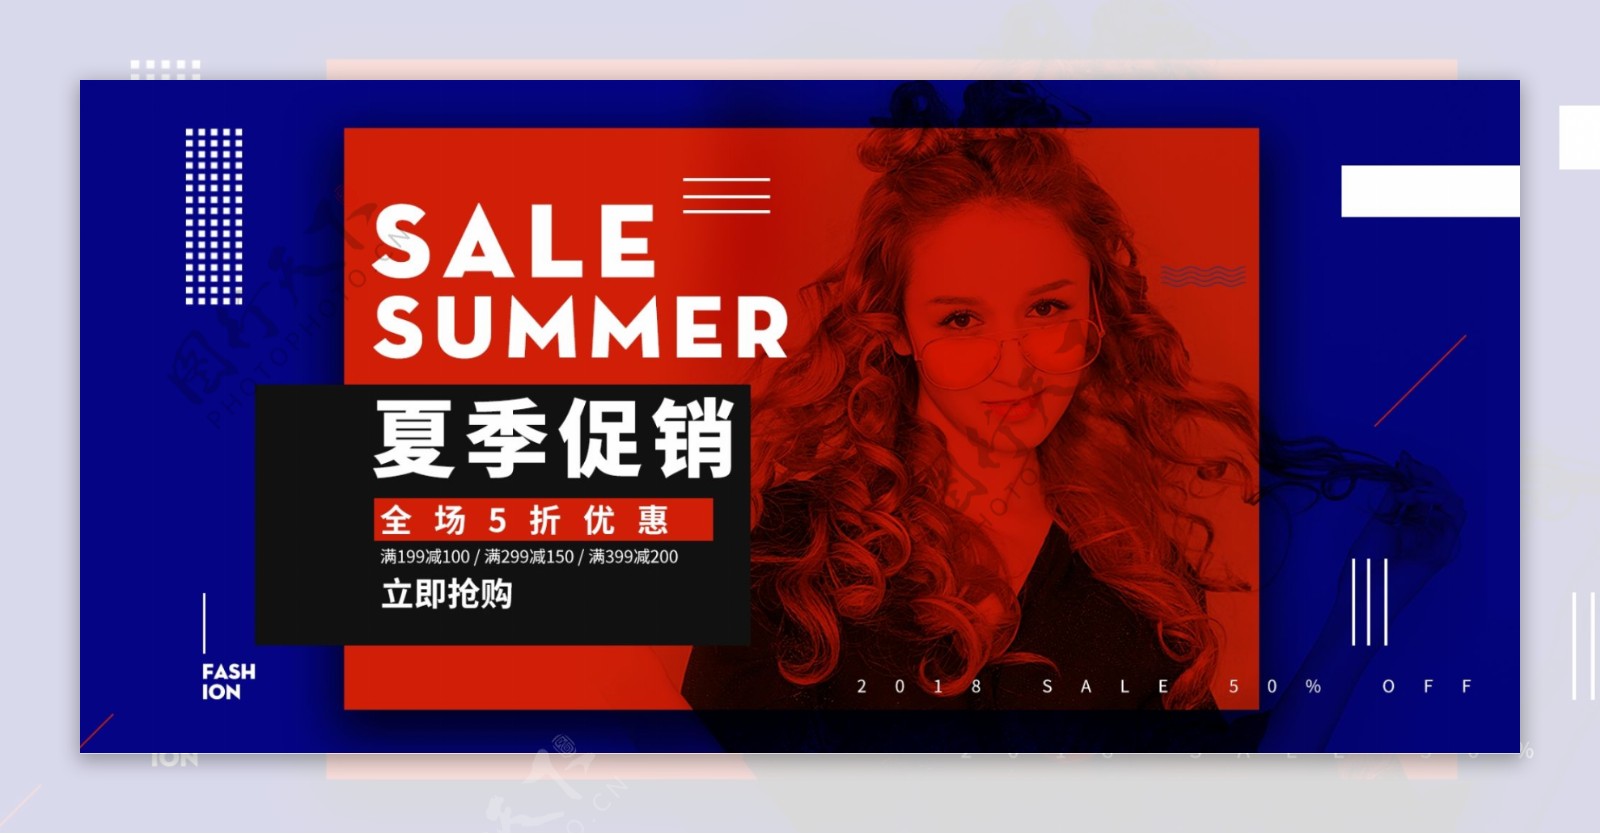 红蓝色欧美风大气夏季促销服装女装电商海报